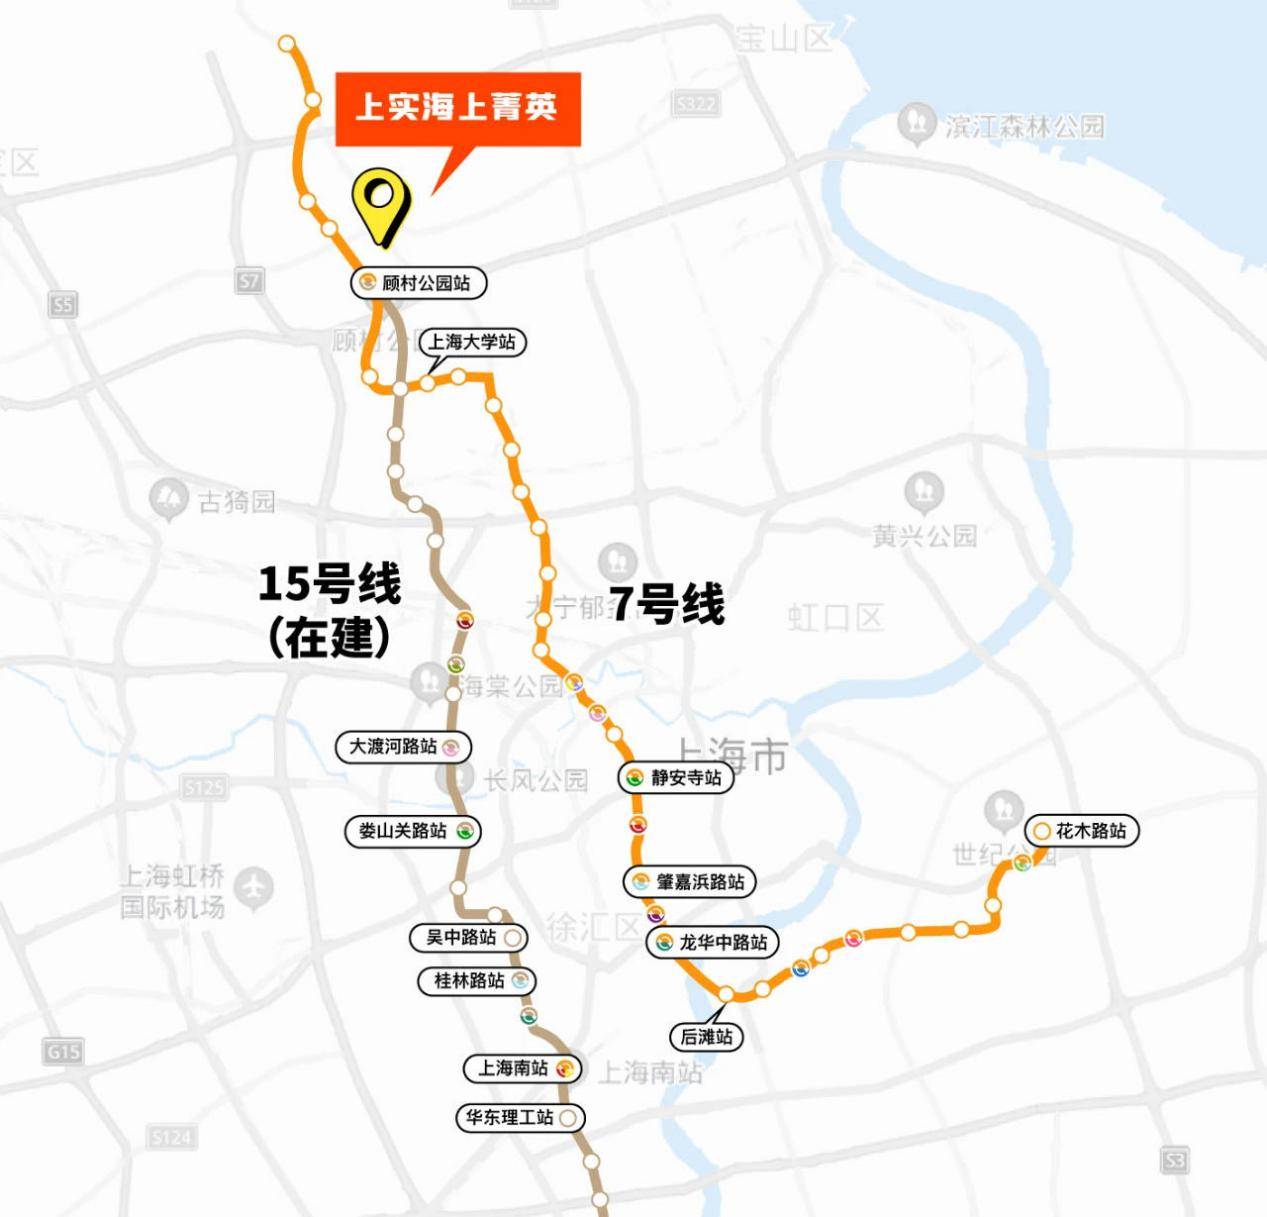 近邻地铁7号线刘行站与15号线(在建中,预计年底通车),可直达华东理工